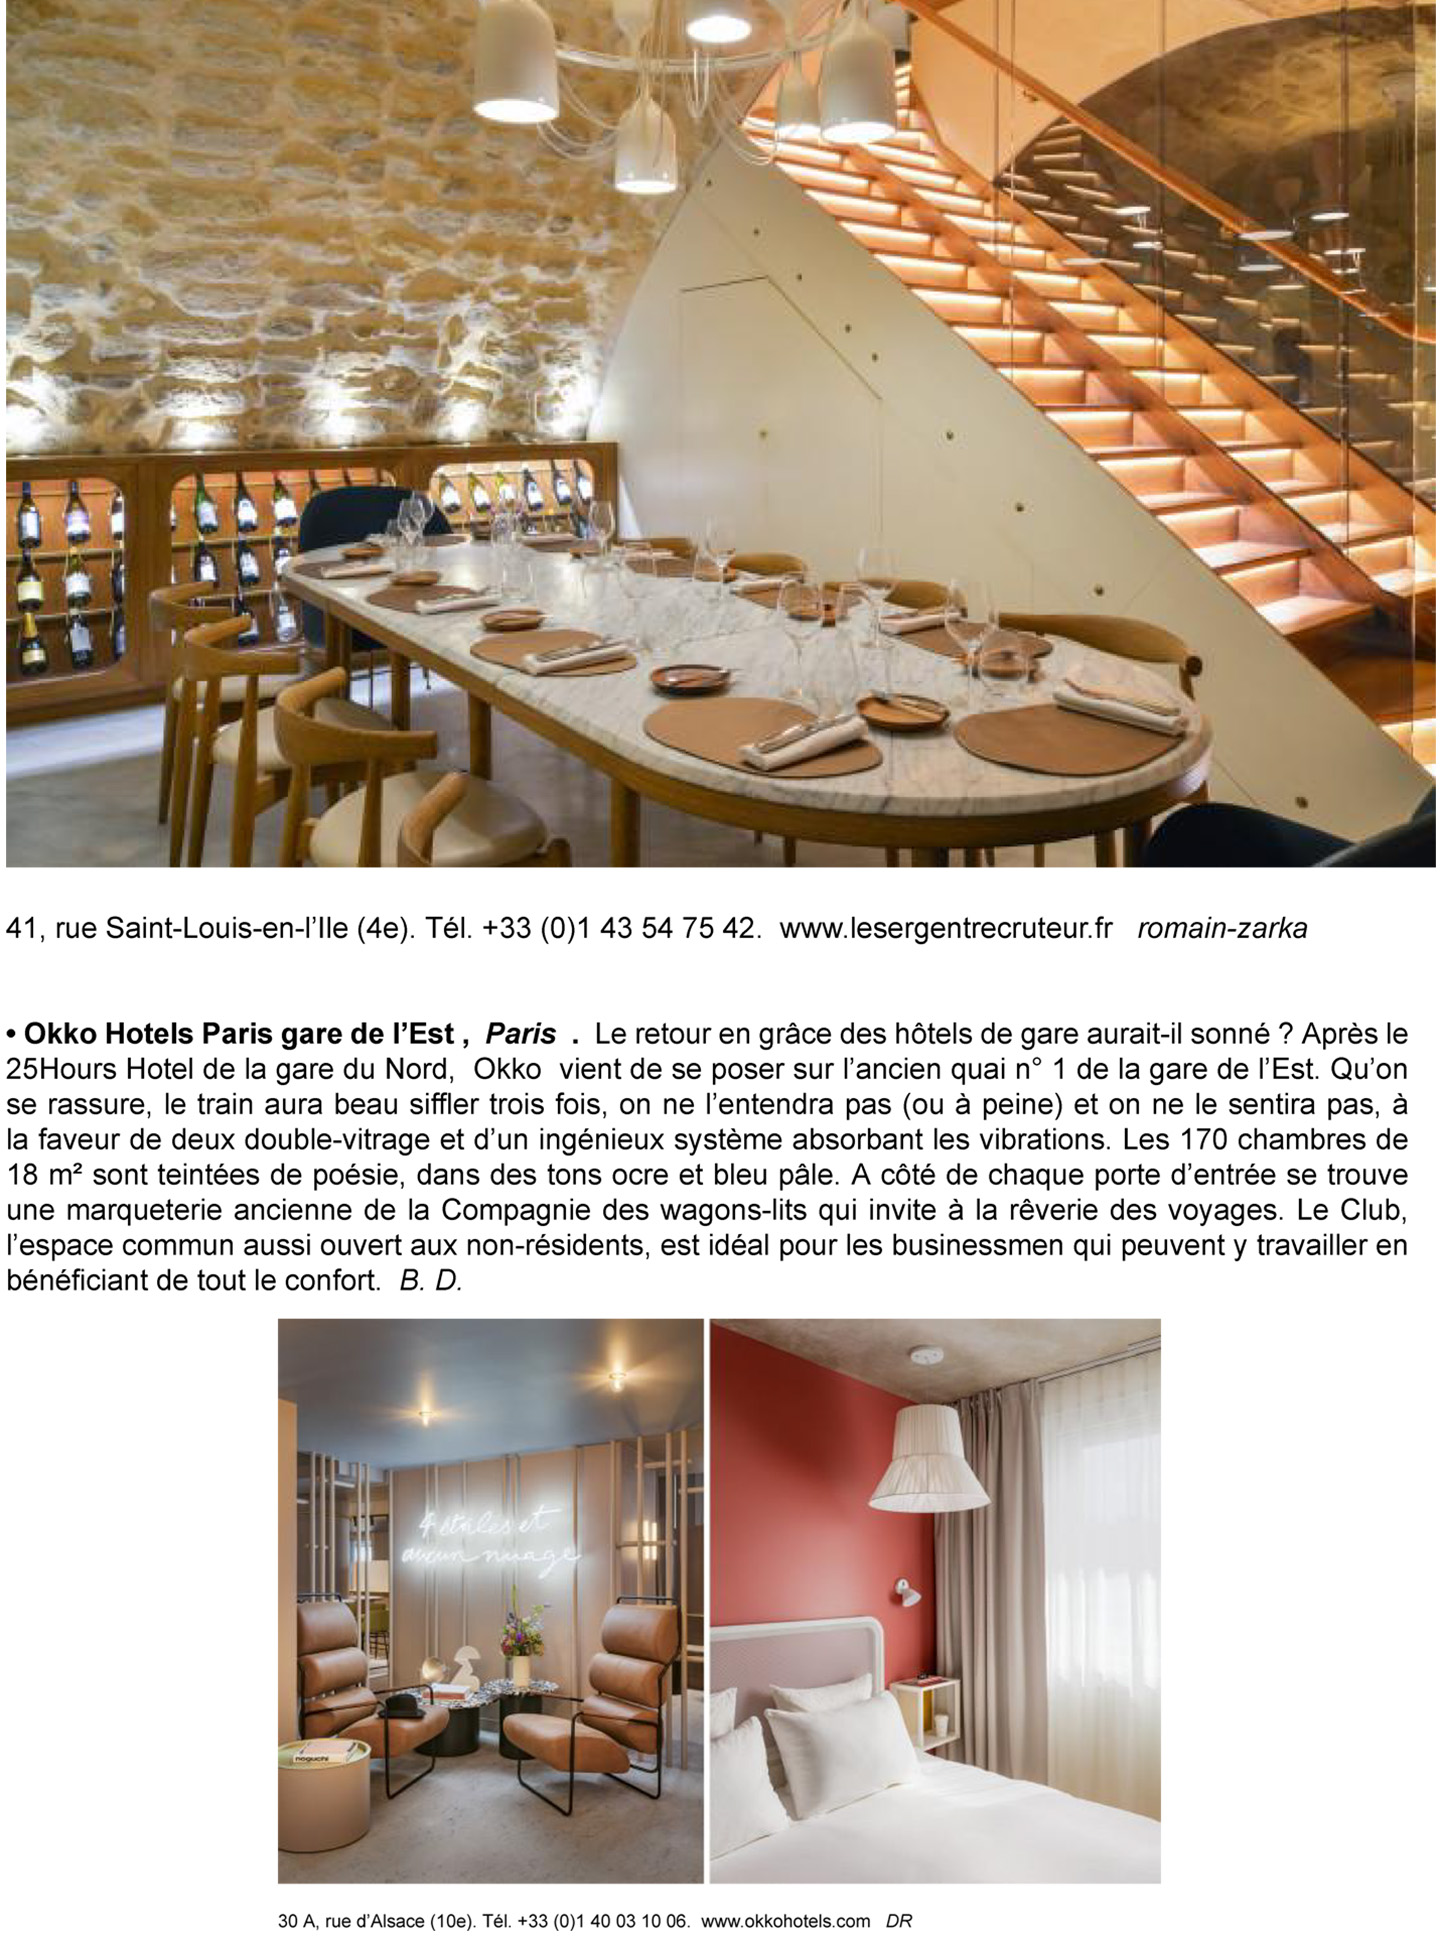 Article sur l'InterContinental Lyon Hotel Dieu réalisé par le studio jean-Philippe Nuel dans le magazine The Good life, nouvel hotel de luxe, architecture d'intérieur de luxe, patrimoine historique